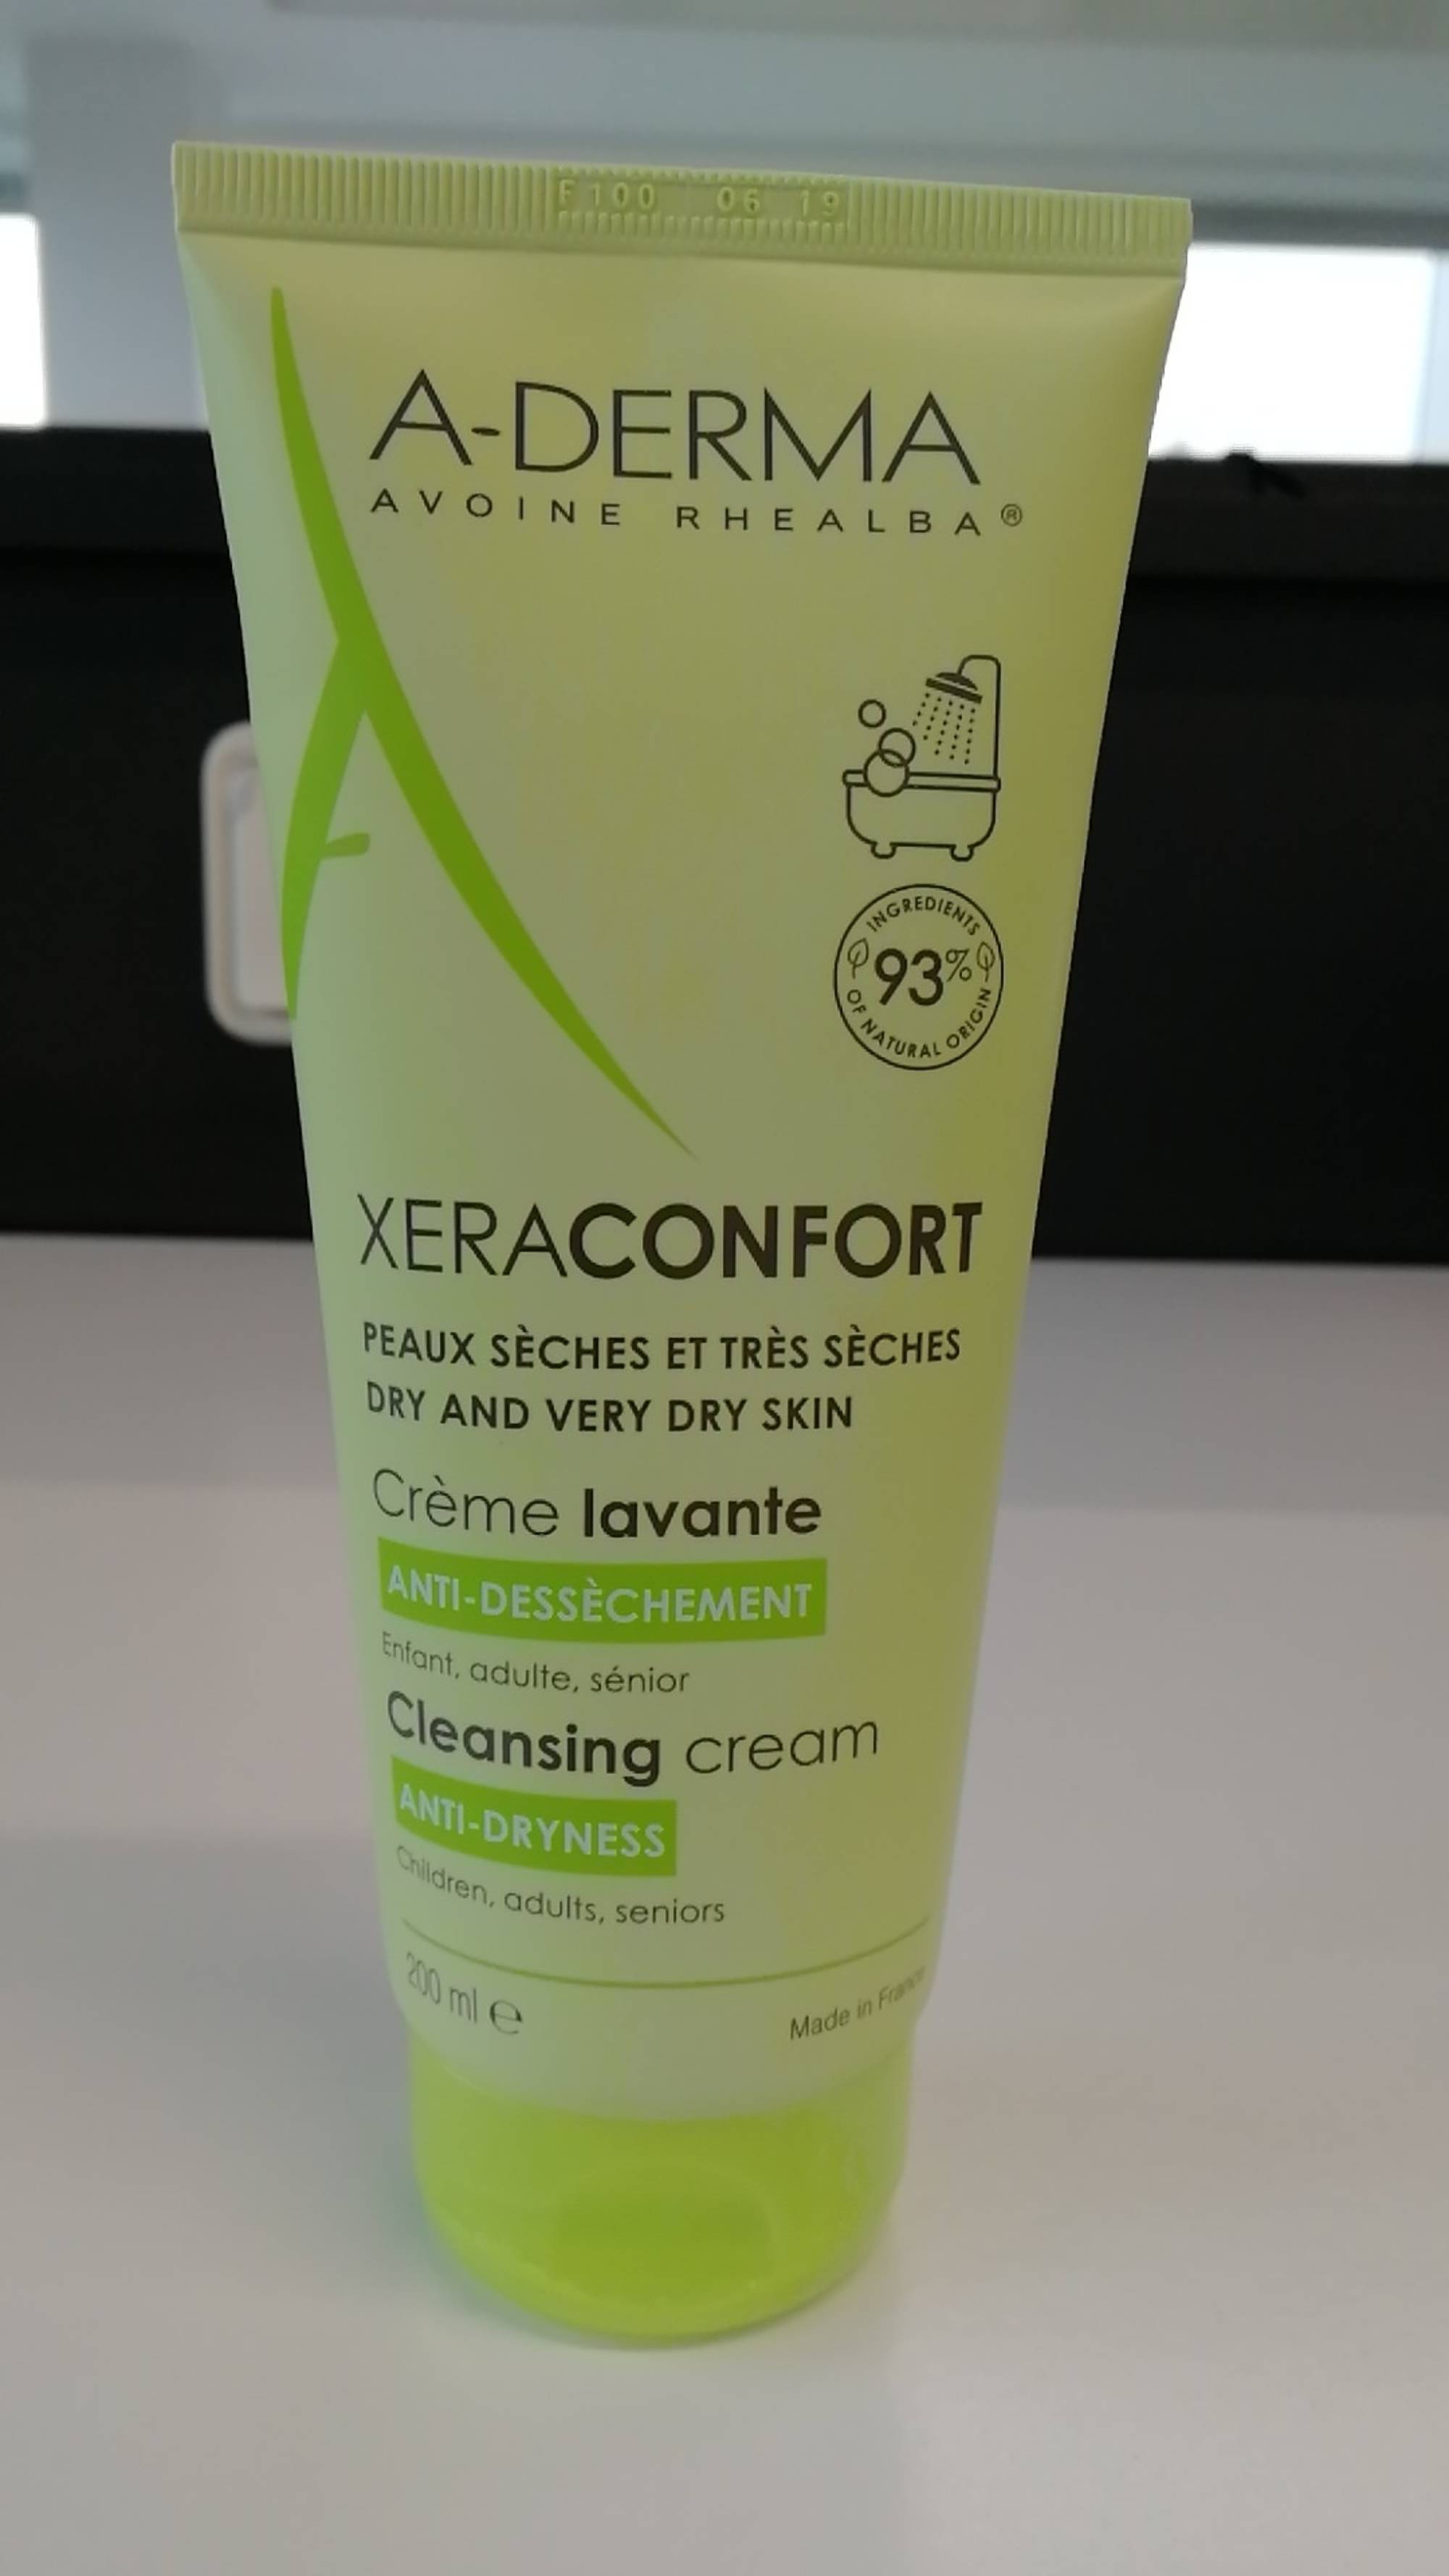 A-DERMA - Xeraconfort - Crème lavante anti-dessèchement